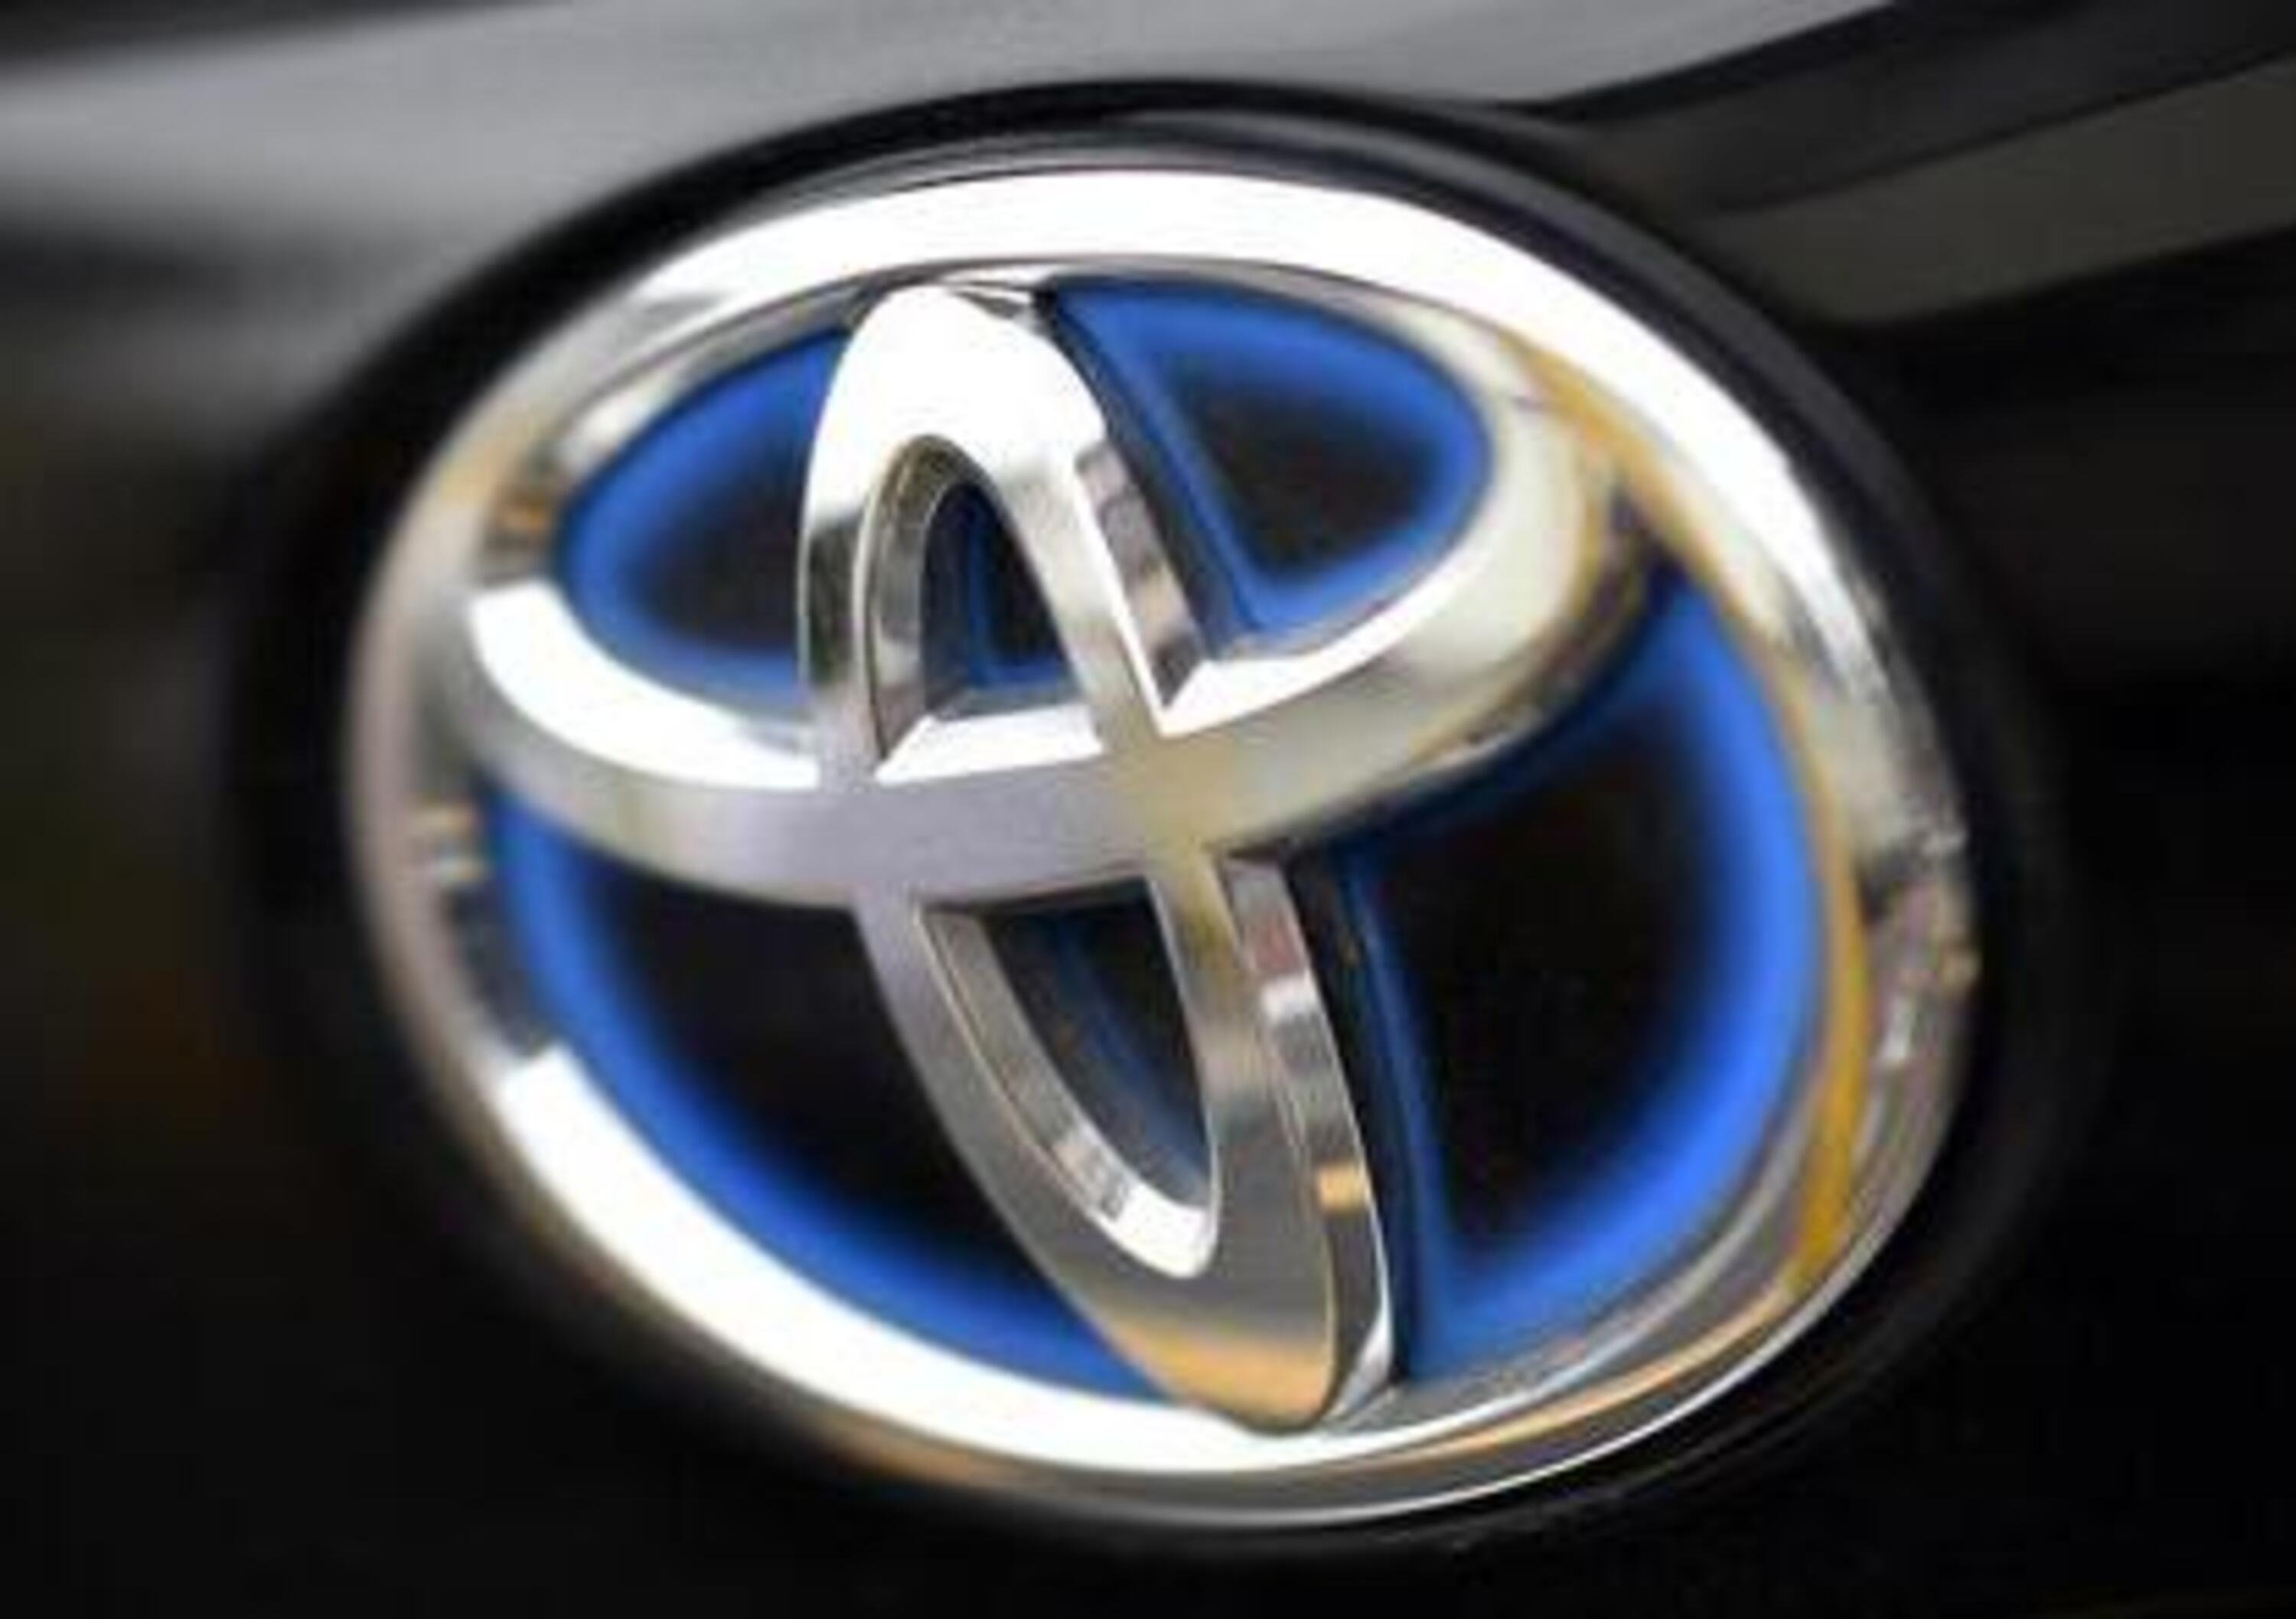 Toyota: in Giappone produzione ferma per terremoto